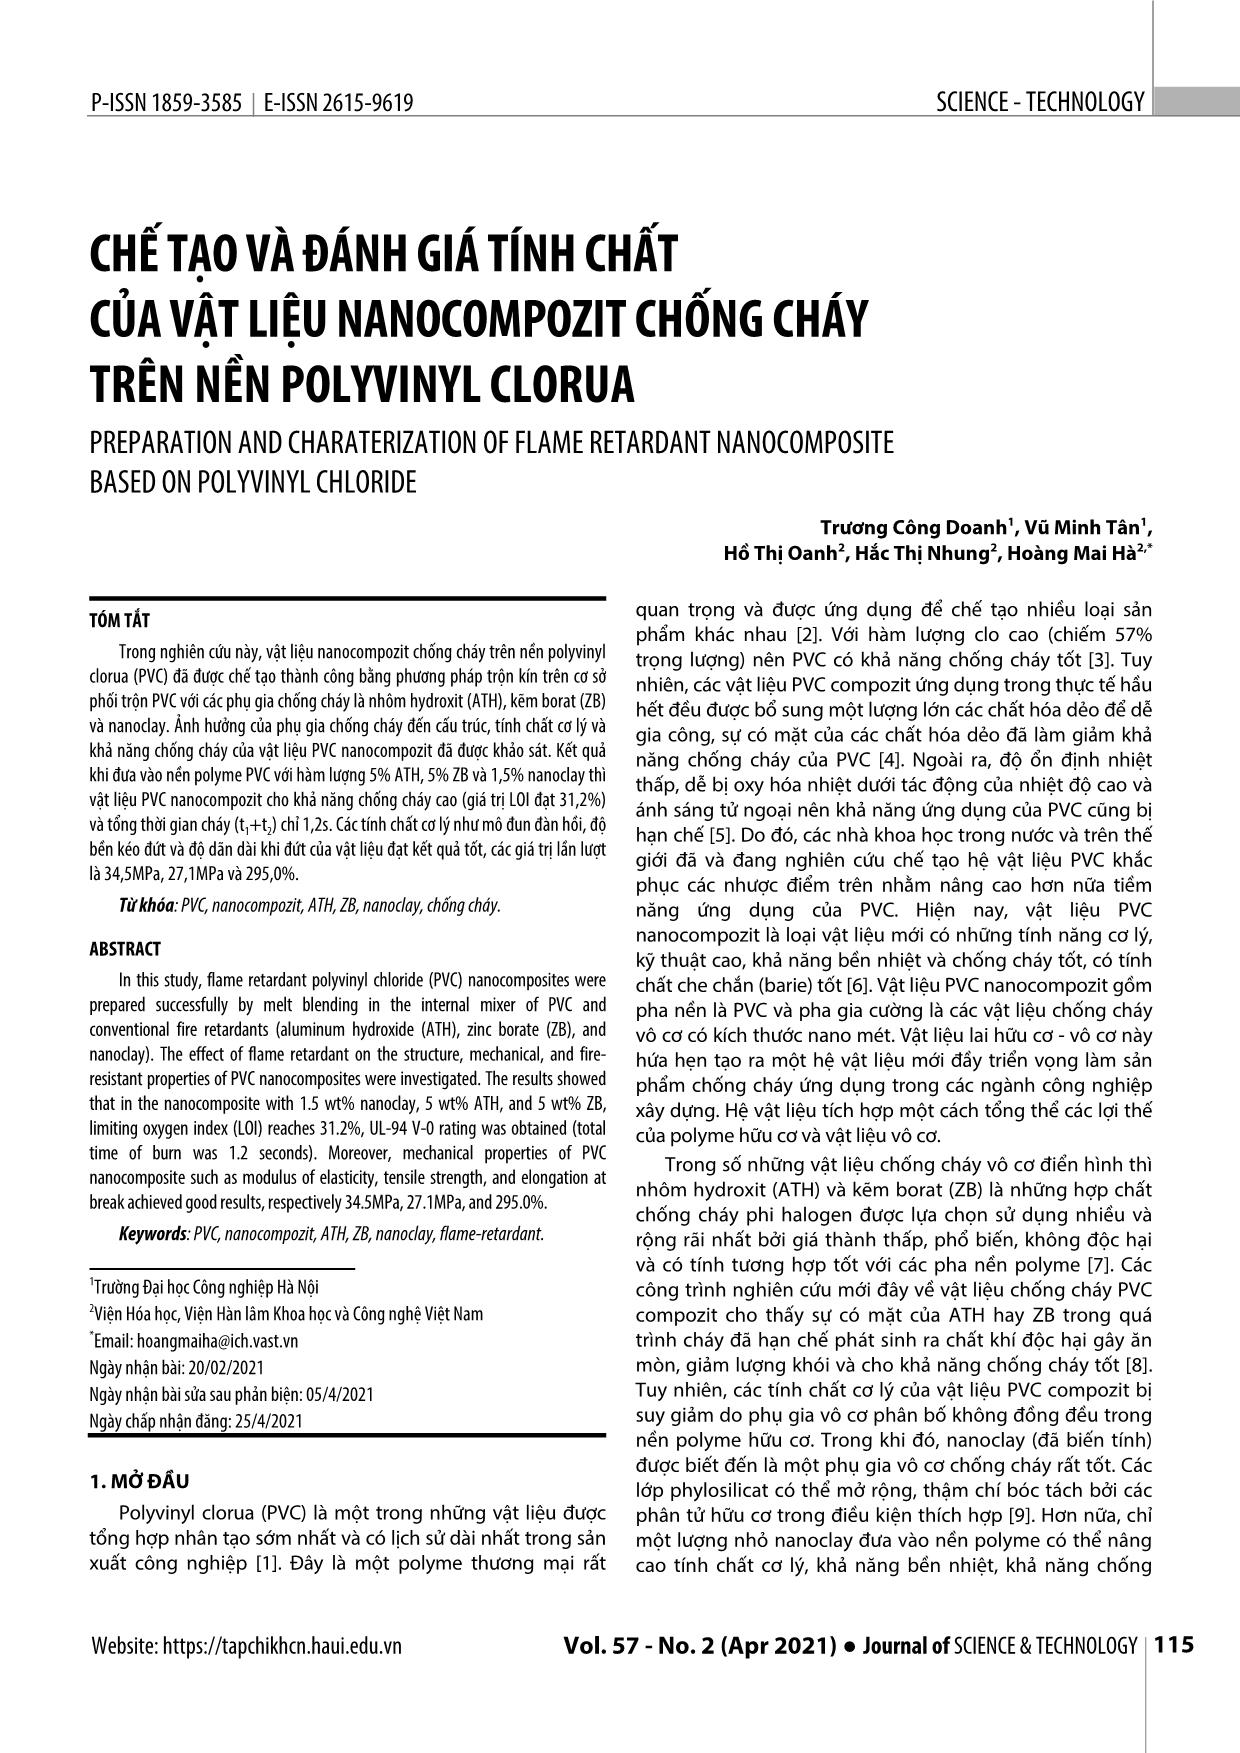 Chế tạo và đánh giá tính chất của vật liệu Nanocompozit chống cháy trên nền Polyvinyl Clorua trang 1